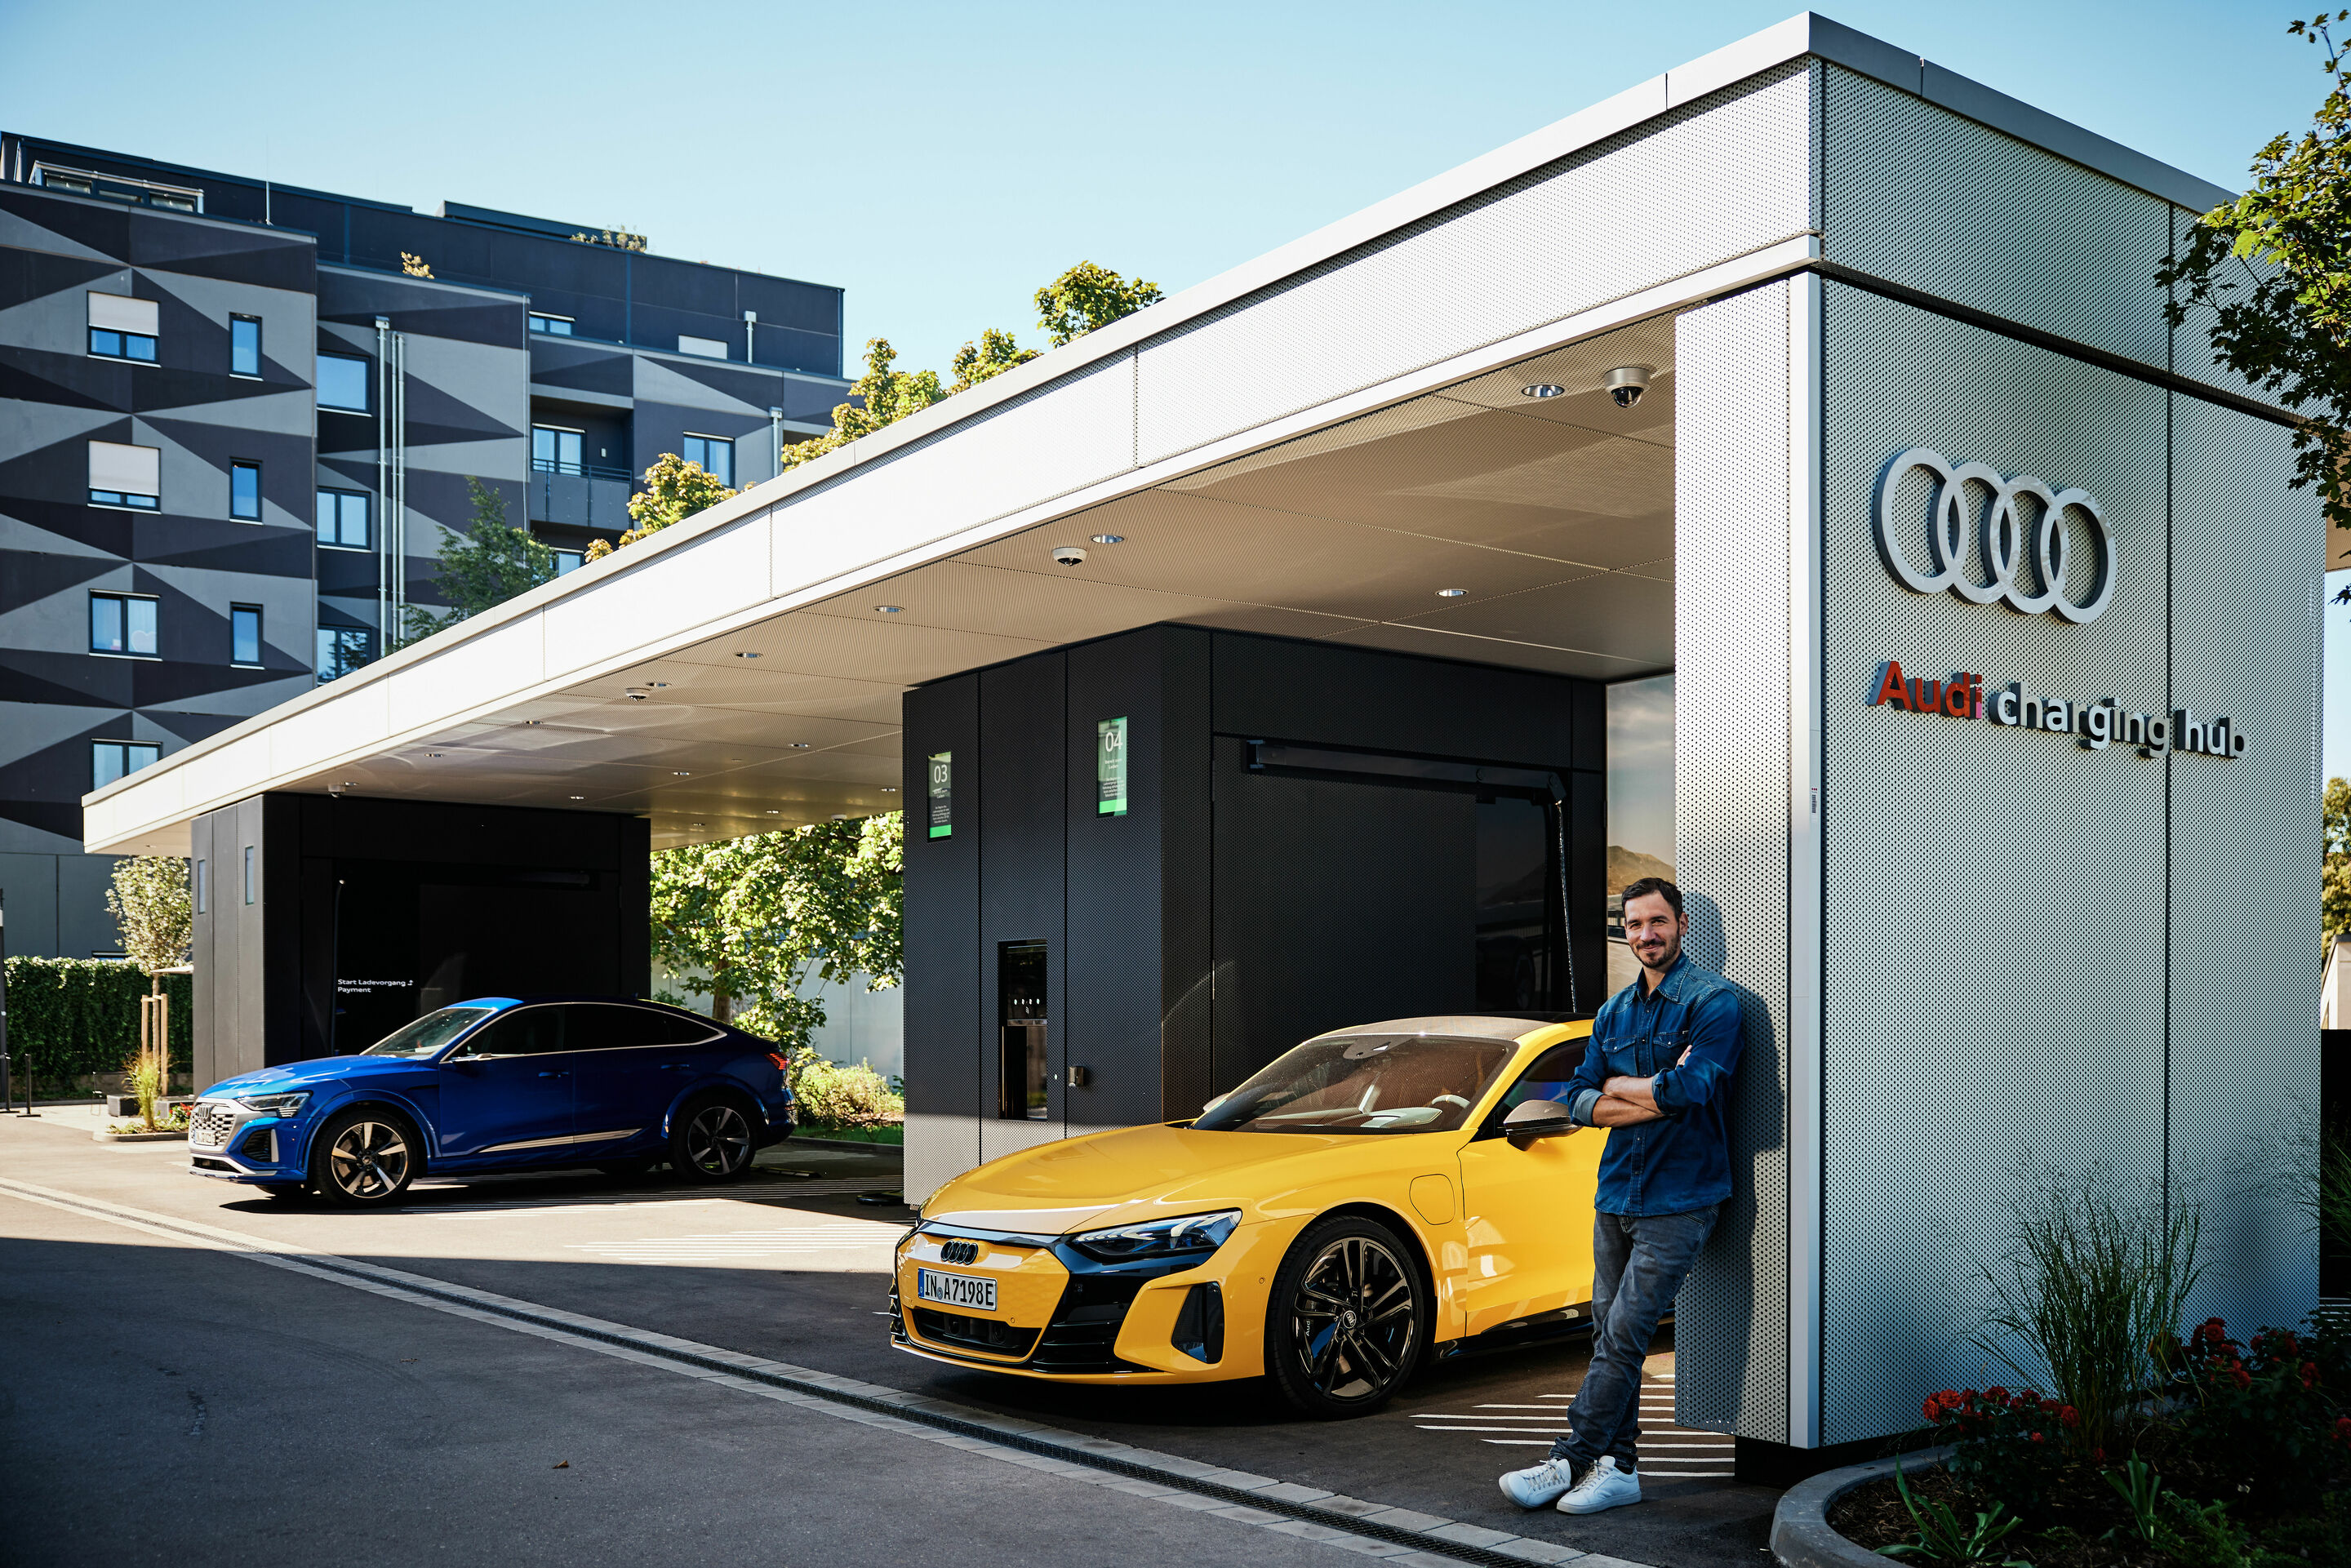 New Audi charging hub opens in Munich